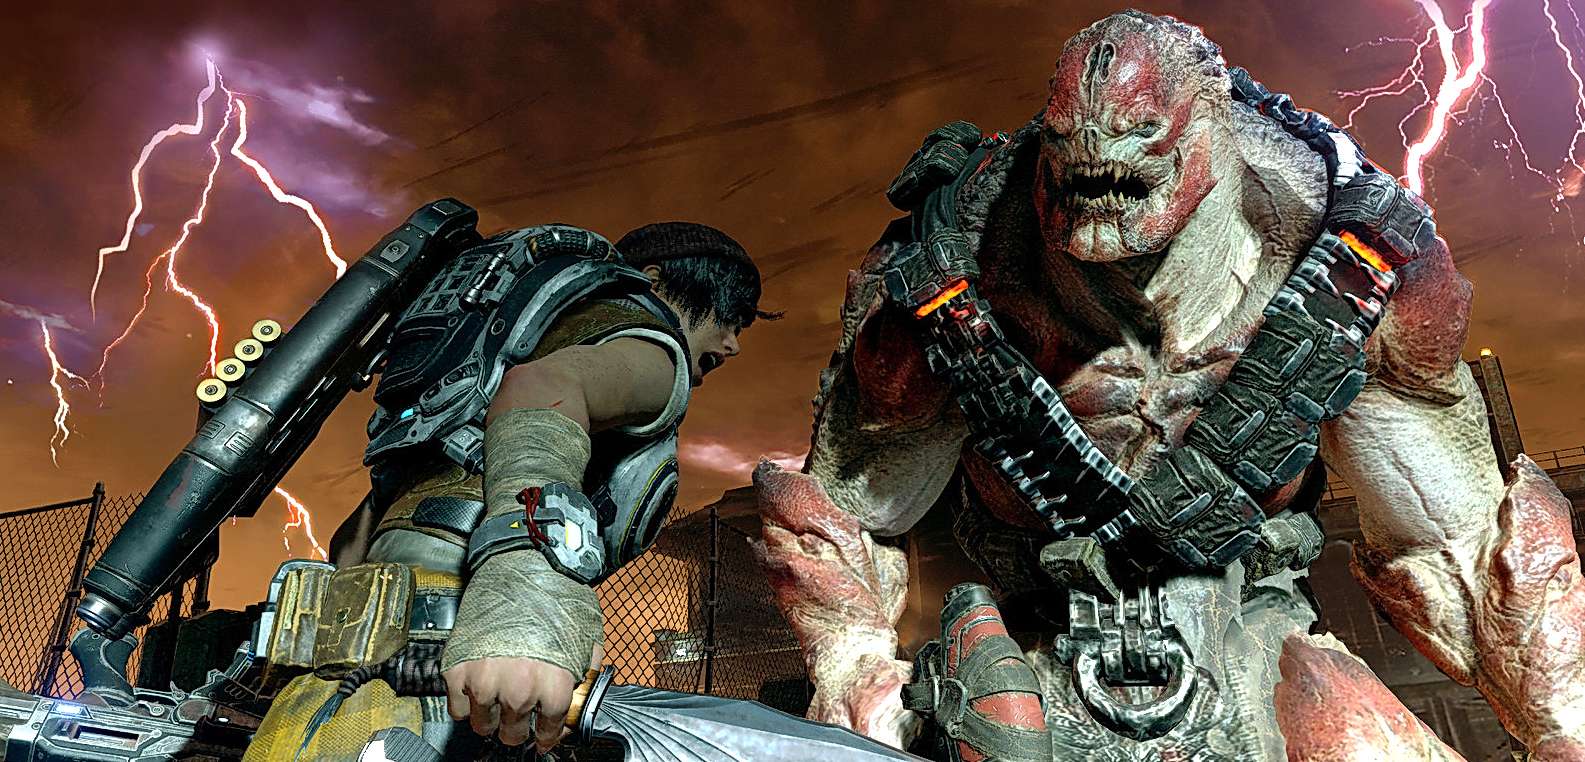 Gears of War 4 na Xbox One X zachwyca w natywnym 4K i HDR. Tryb Wydajności potrafi spaść poniżej 60 fps